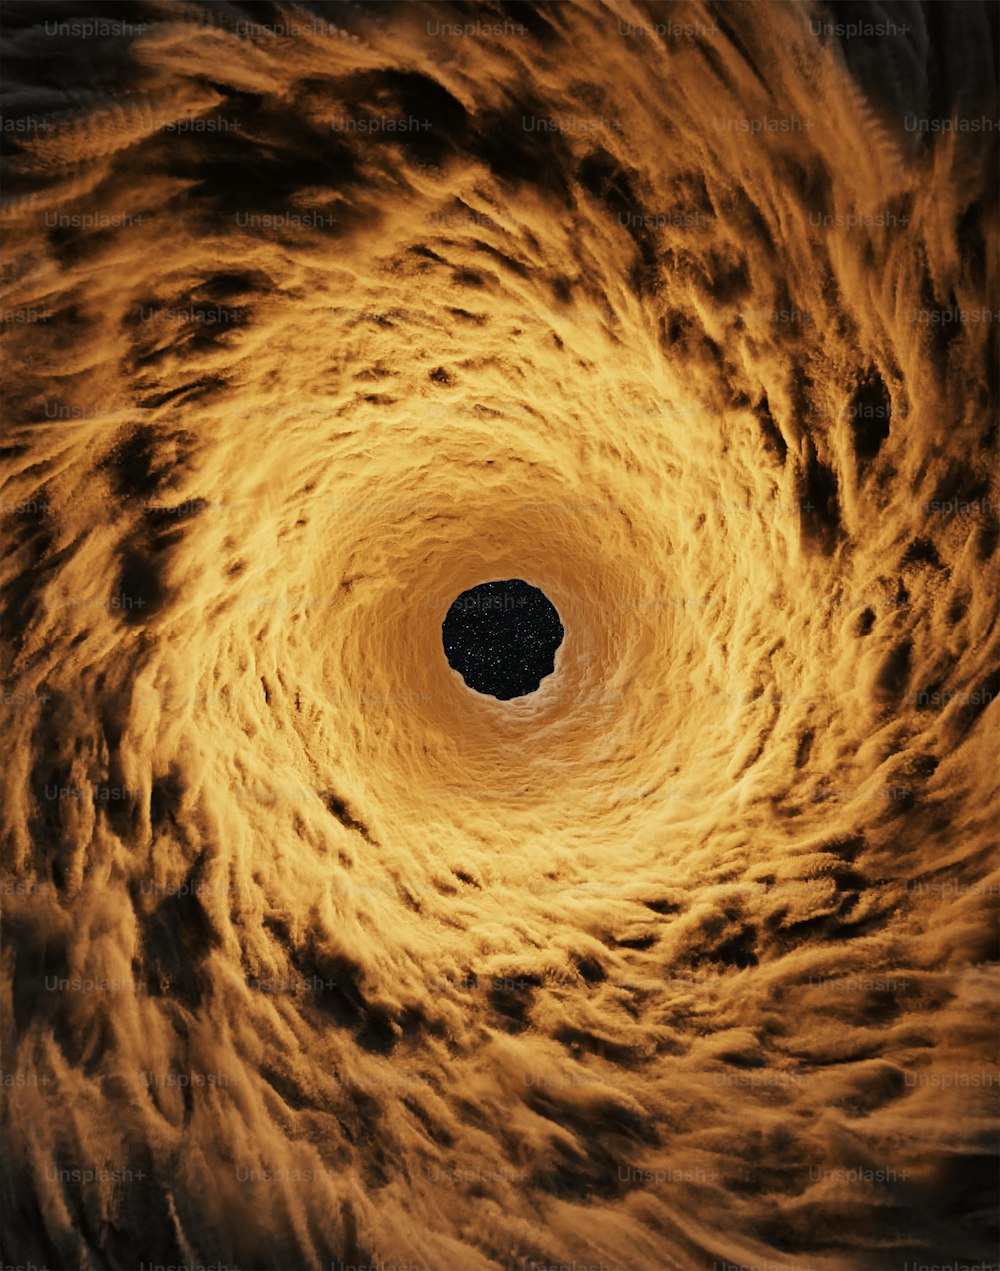 노란색 소용돌이의 중심에 있는 블랙홀